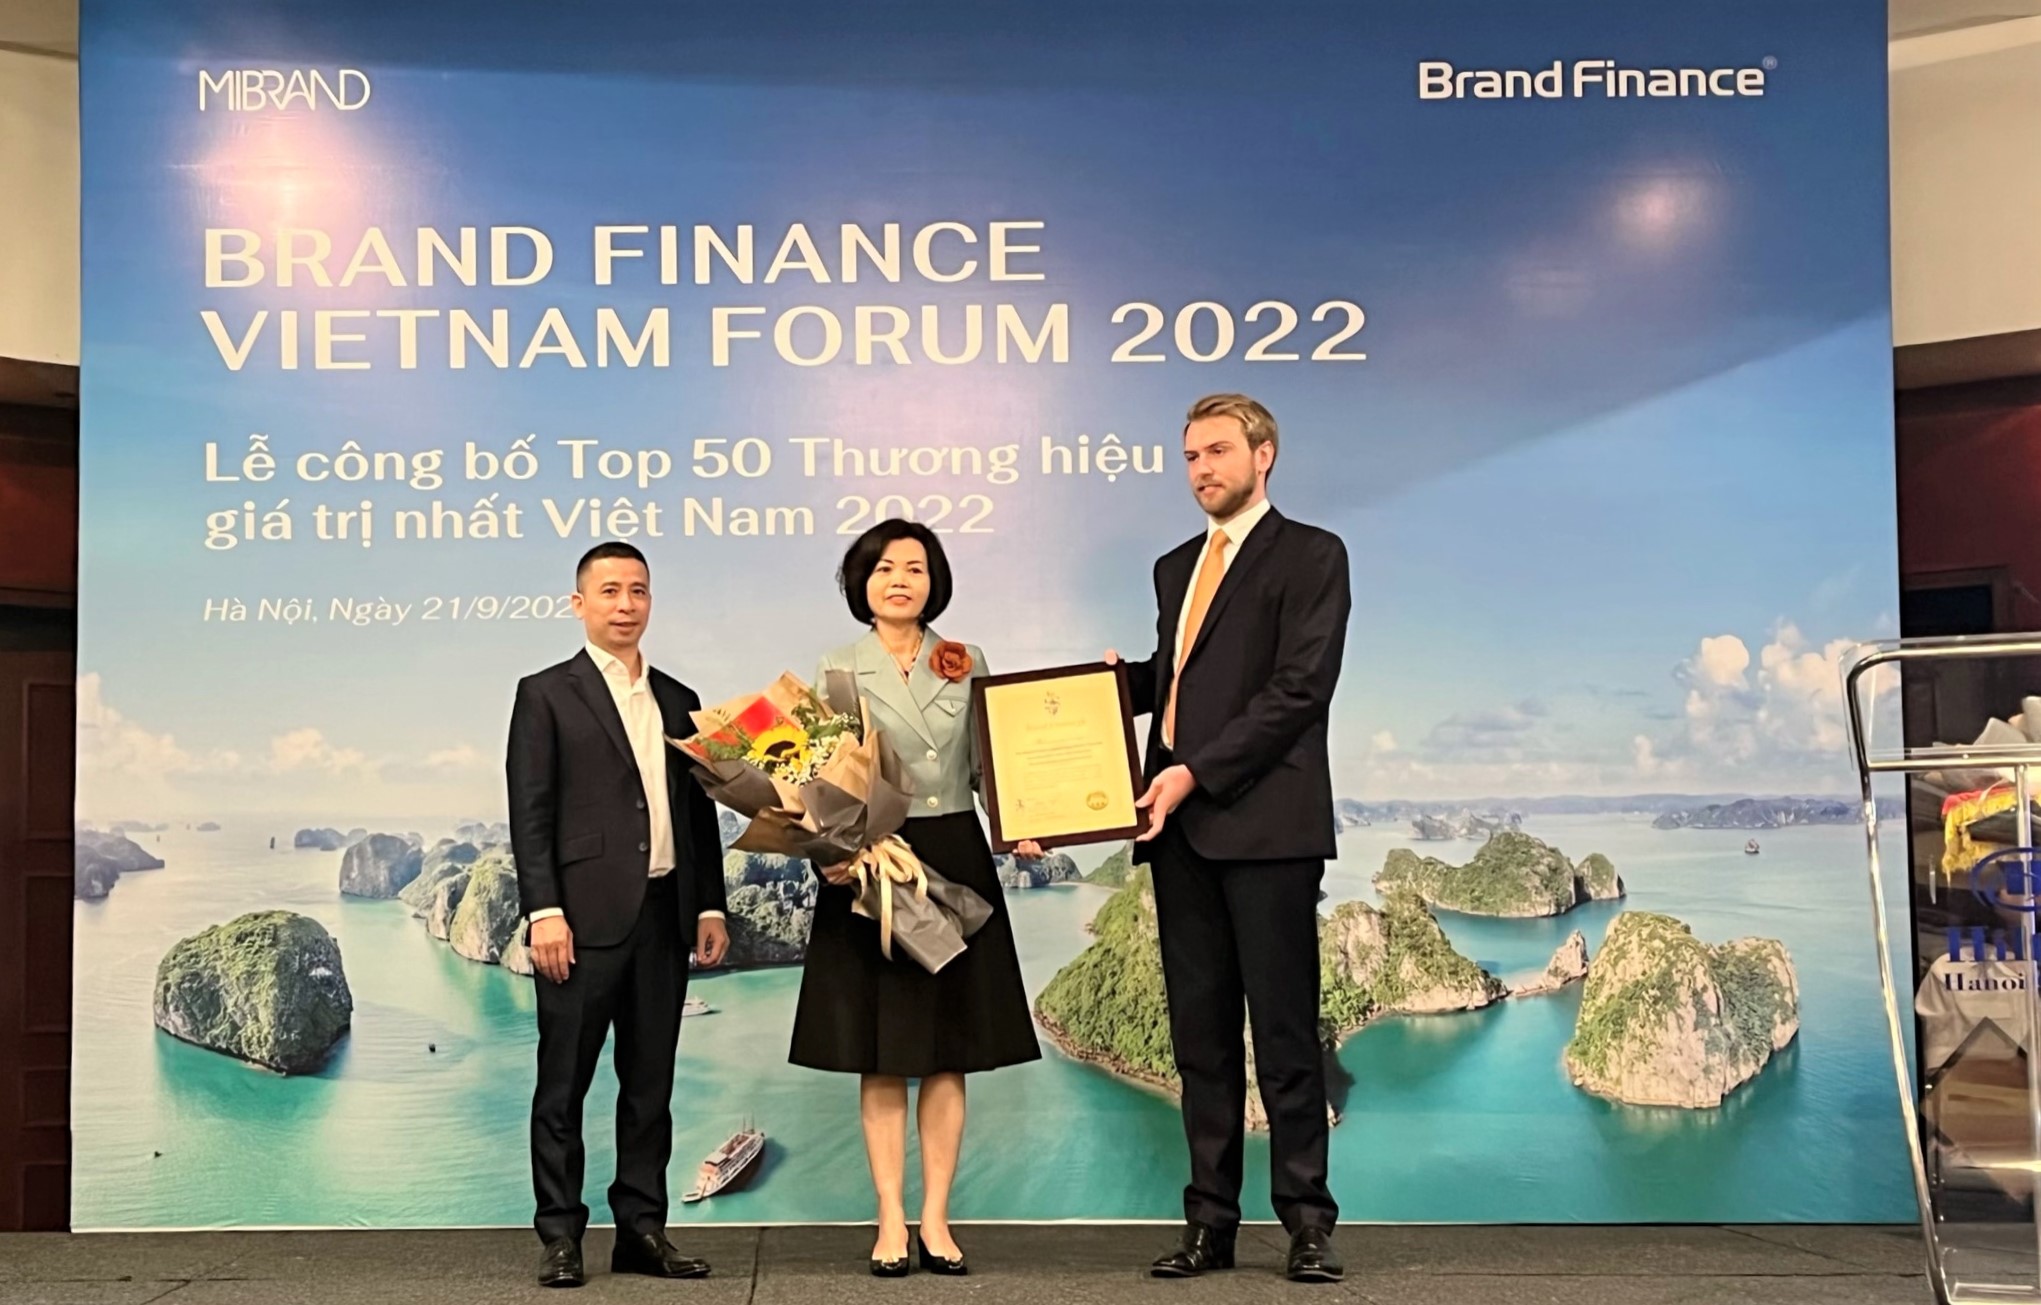 Đại diện Brand Finance trao chứng nhận “Vinamilk - Thương hiệu sữa lớn thứ 6 thế giới” cho Bà Bùi Thị Hương – Giám đốc Điều hành Vinamilk.